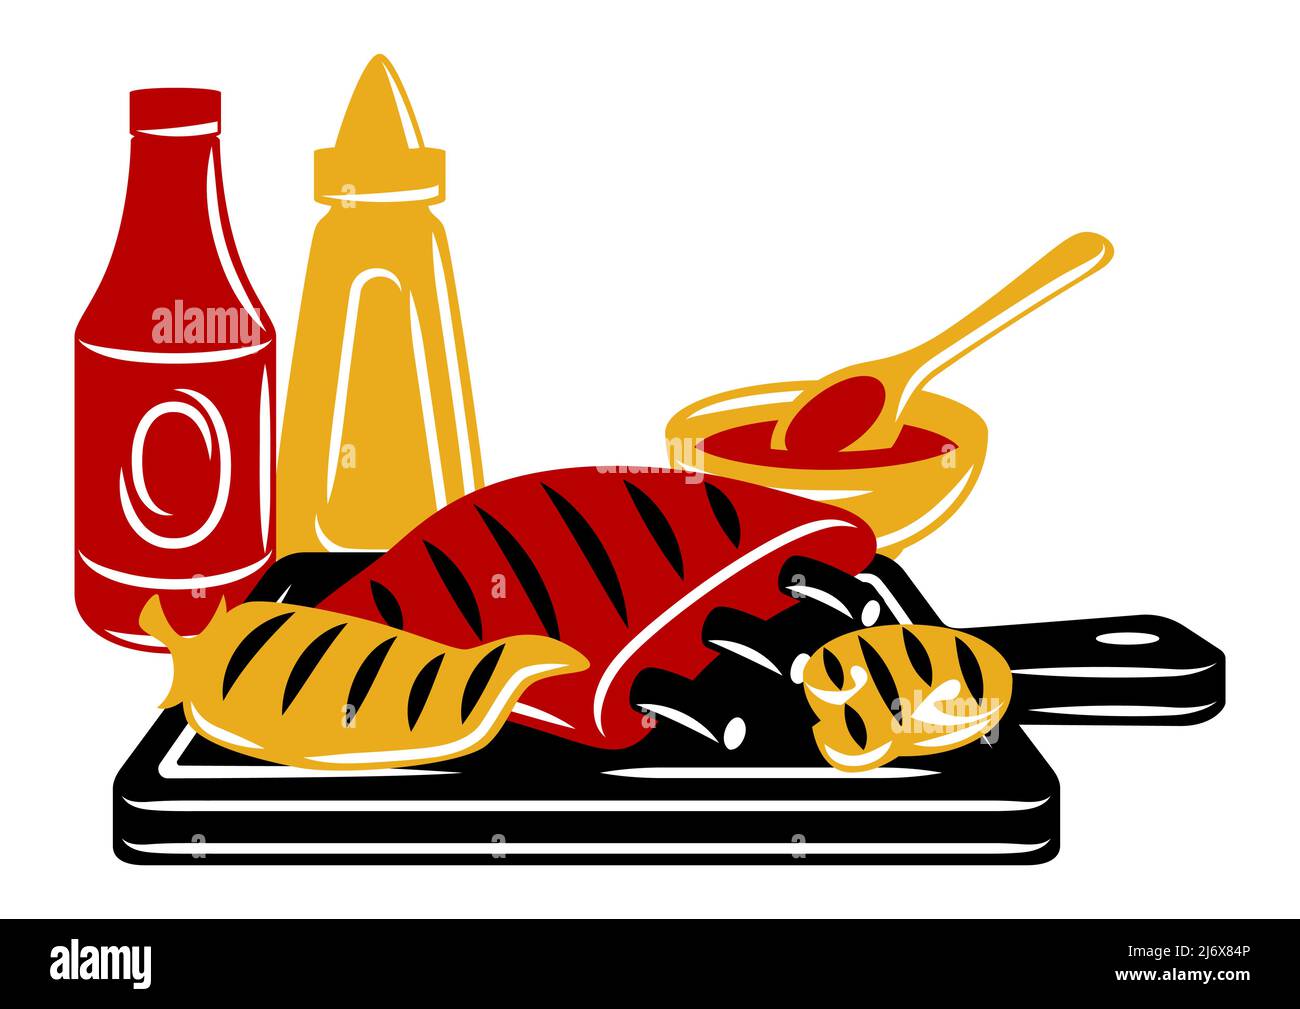 Illustrazione del barbecue con oggetti e icone della griglia. Cucina  stilizzata e menu del ristorante Immagine e Vettoriale - Alamy